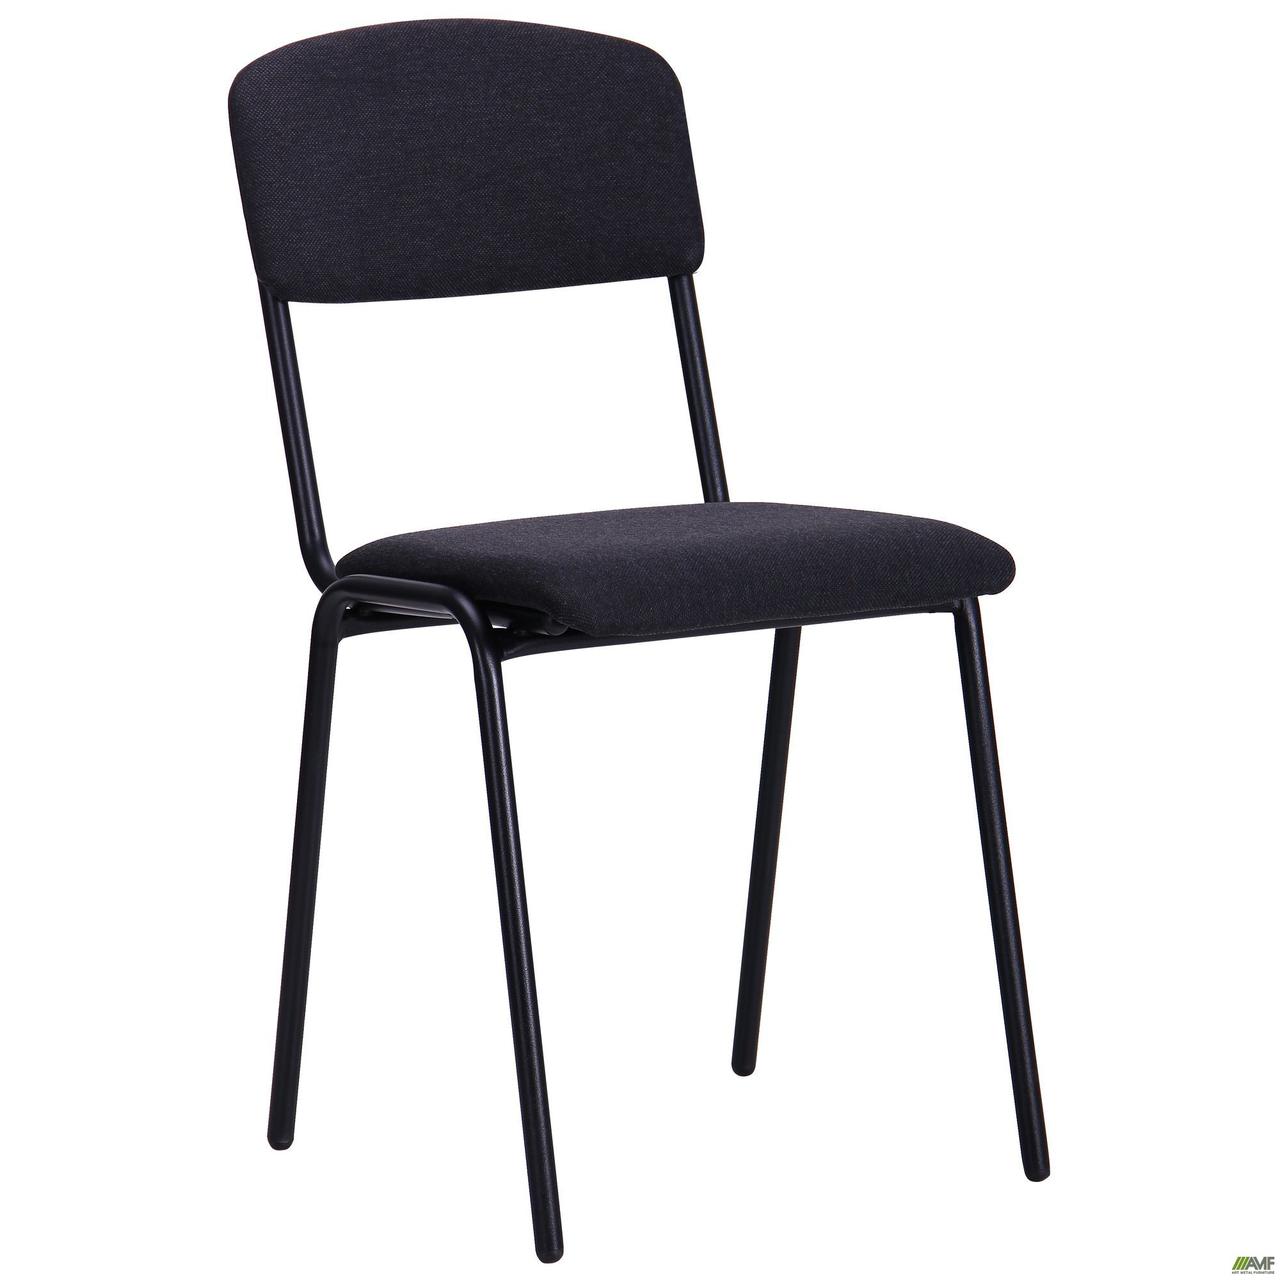 Офісний стілець АМФ Майстер чорний металевий з м'яким сидінням і спинкою